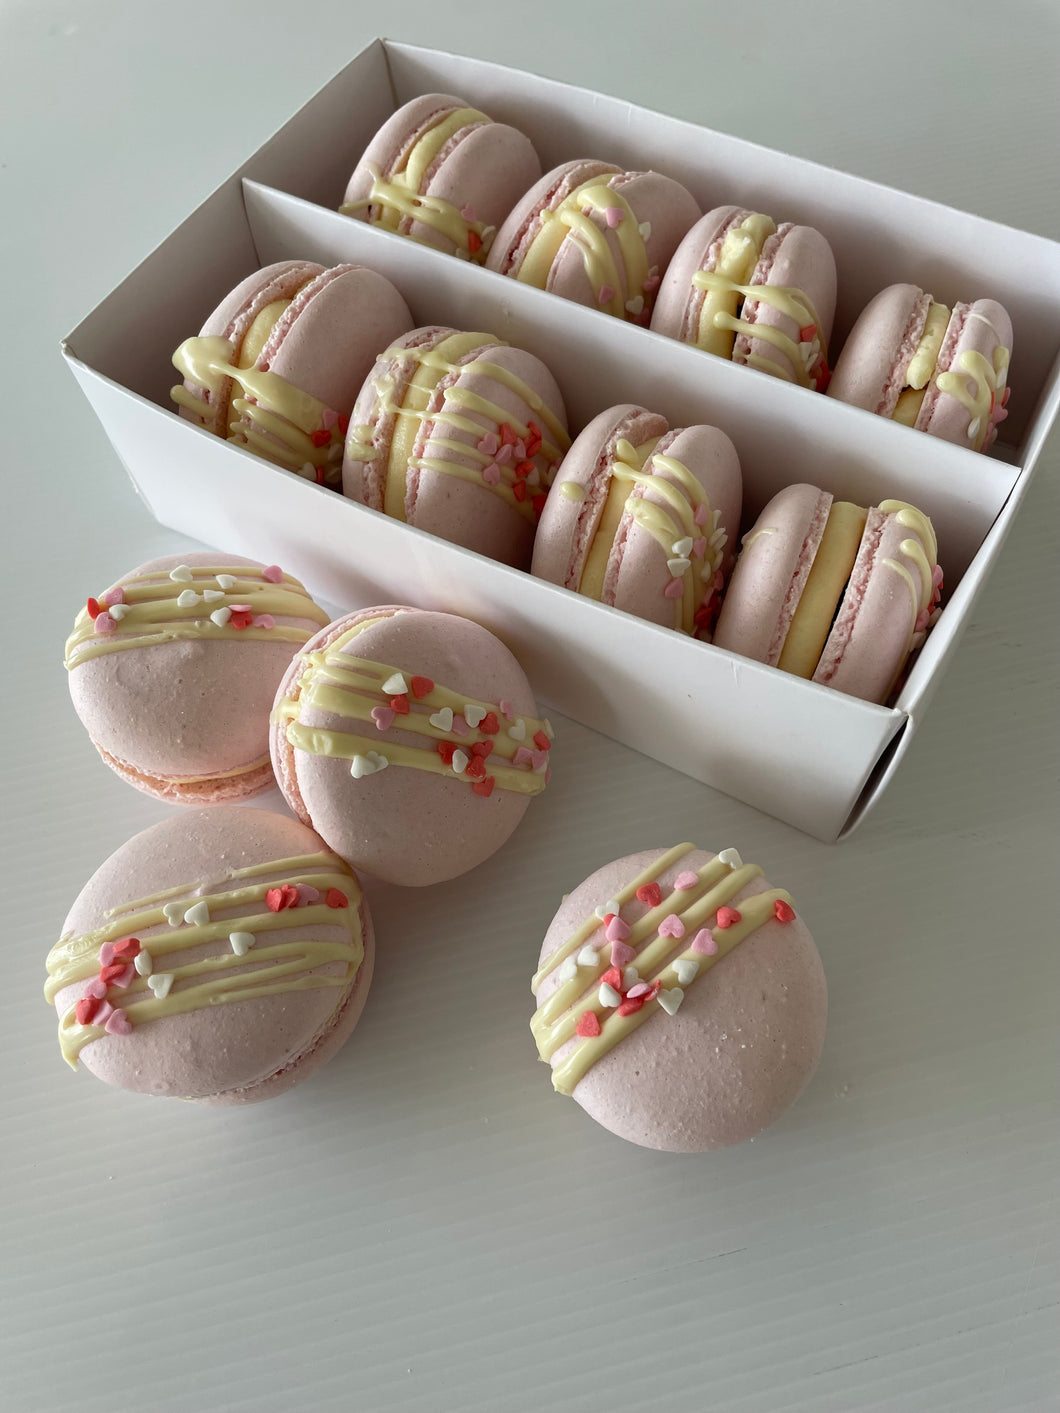 Valentines Macarons - Strawberry/White Chocolate (8 pack)